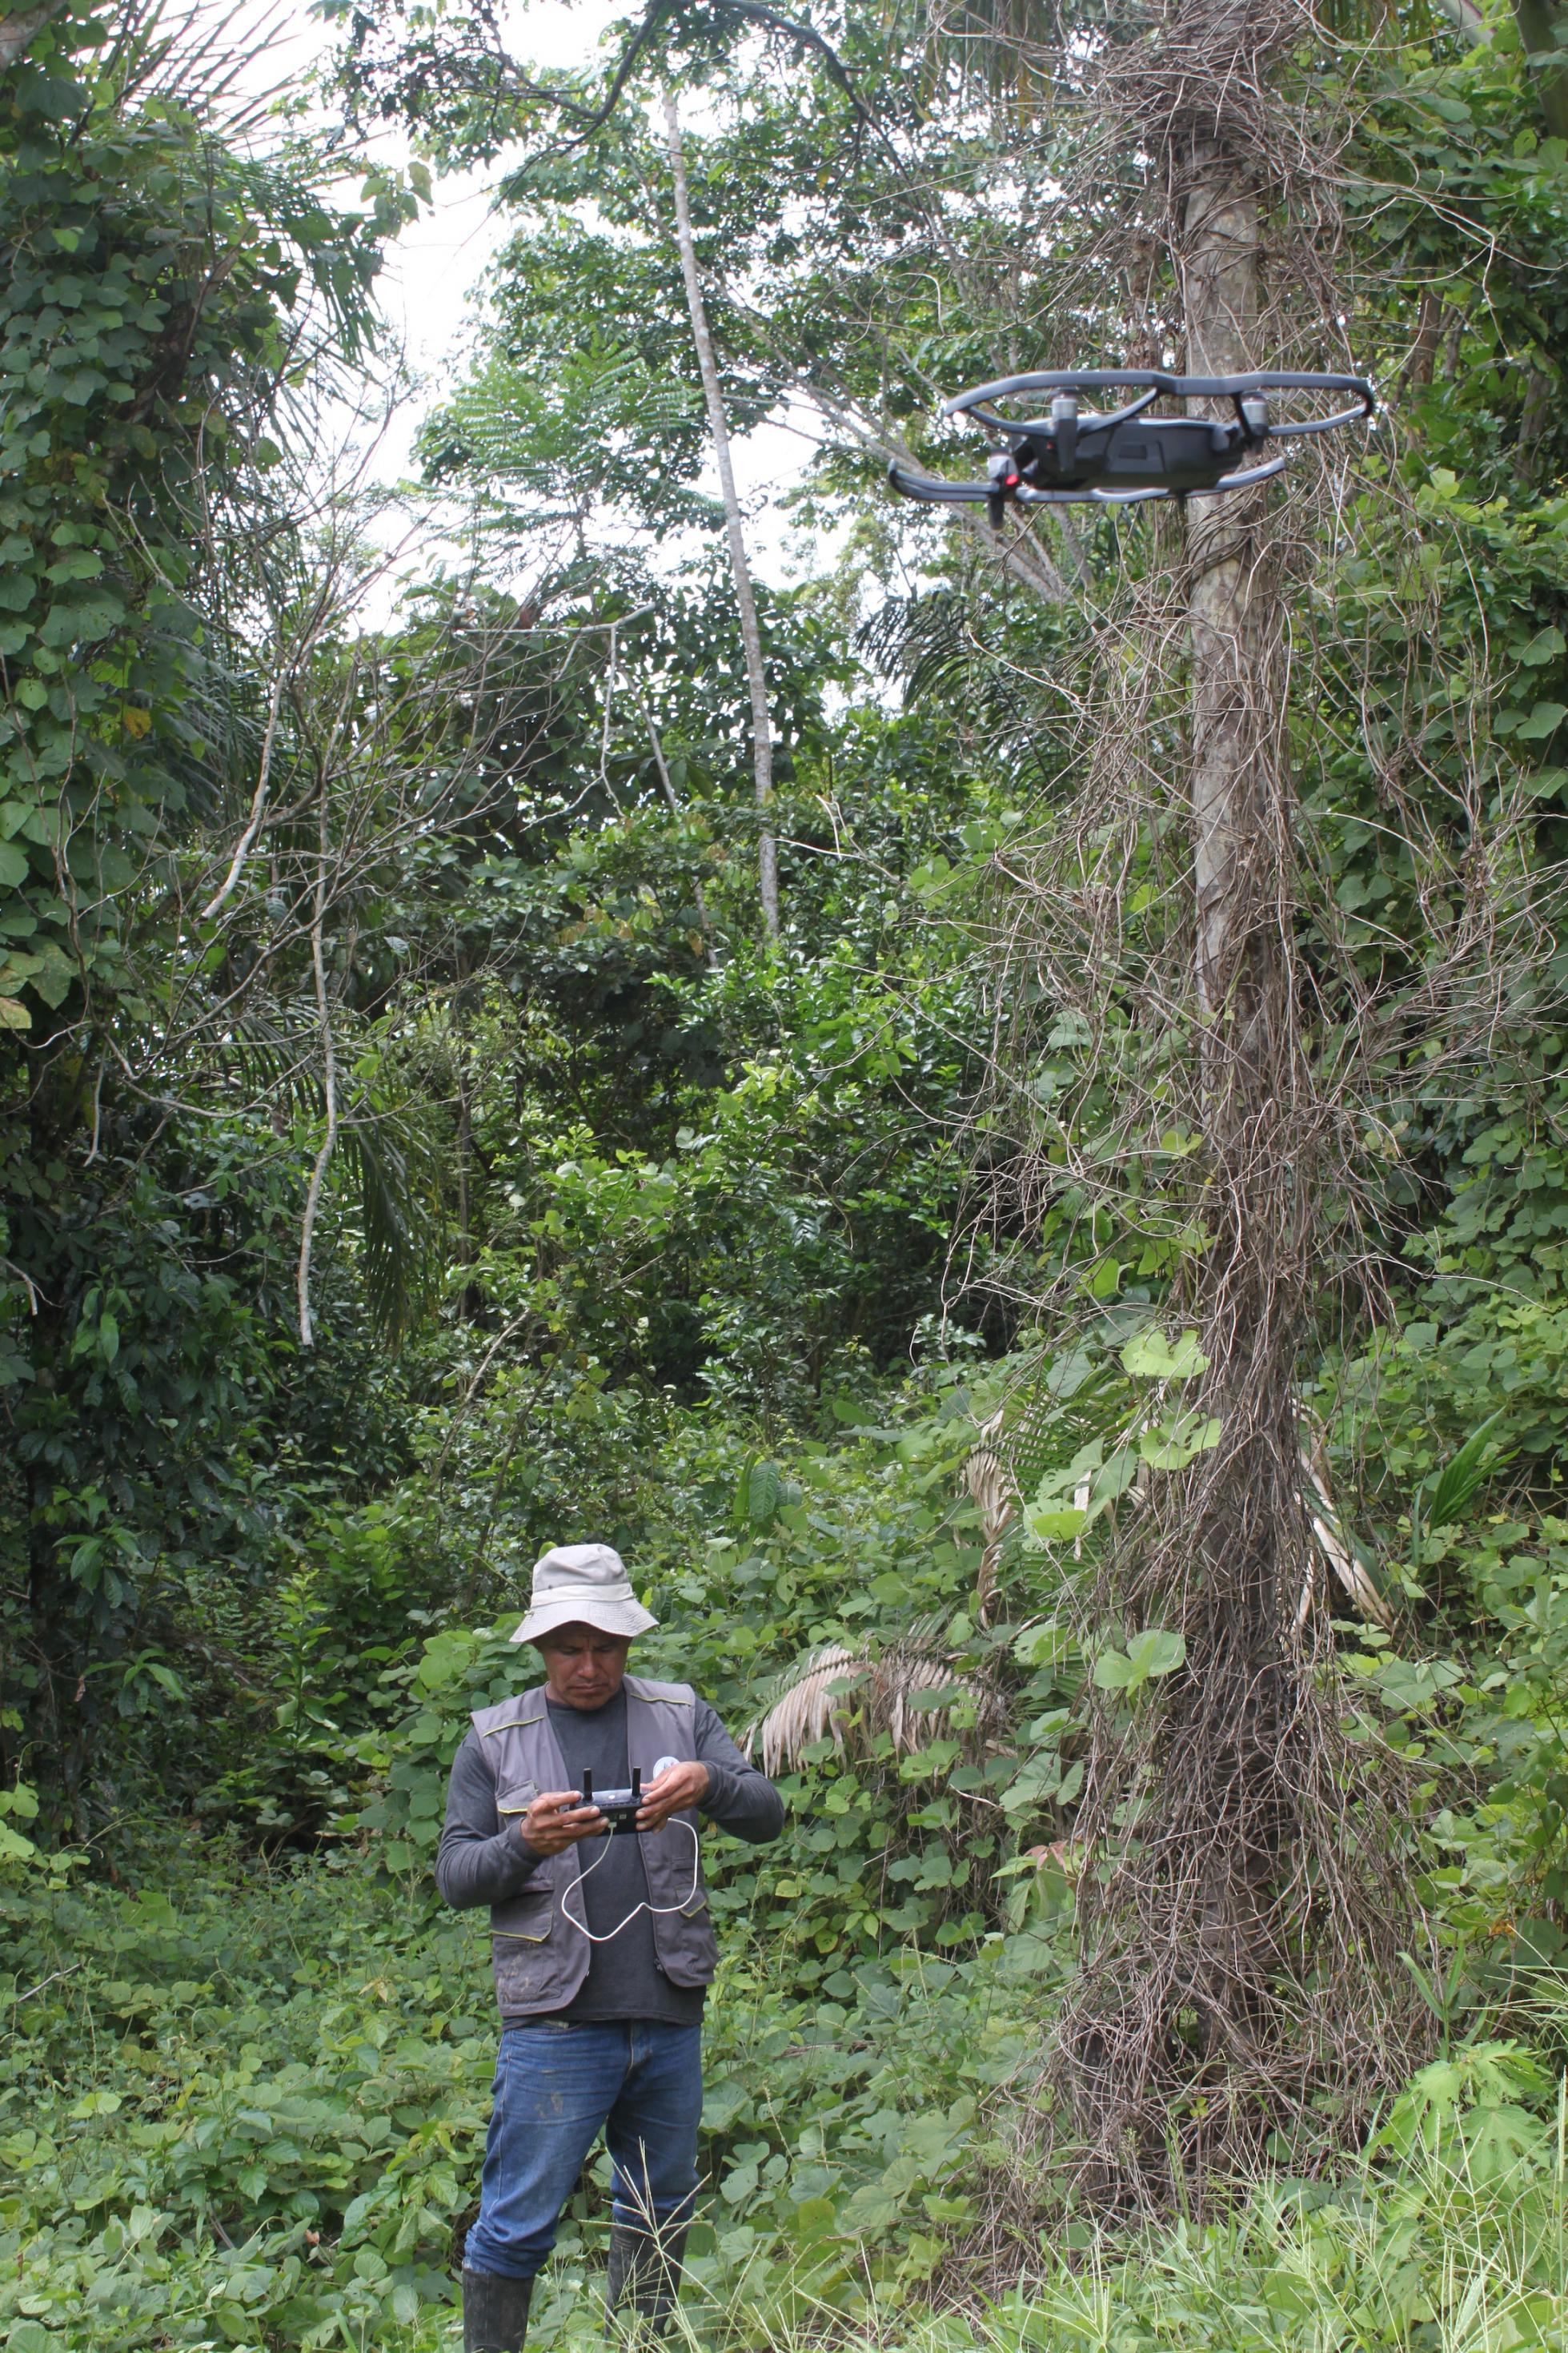 Ein Mann mit Trapperjacke und Hut bedient eine Drohne. Der Mann steht inmitten eines Gebüschs, ist von hohen Bäumen und Gebüsch umgeben.